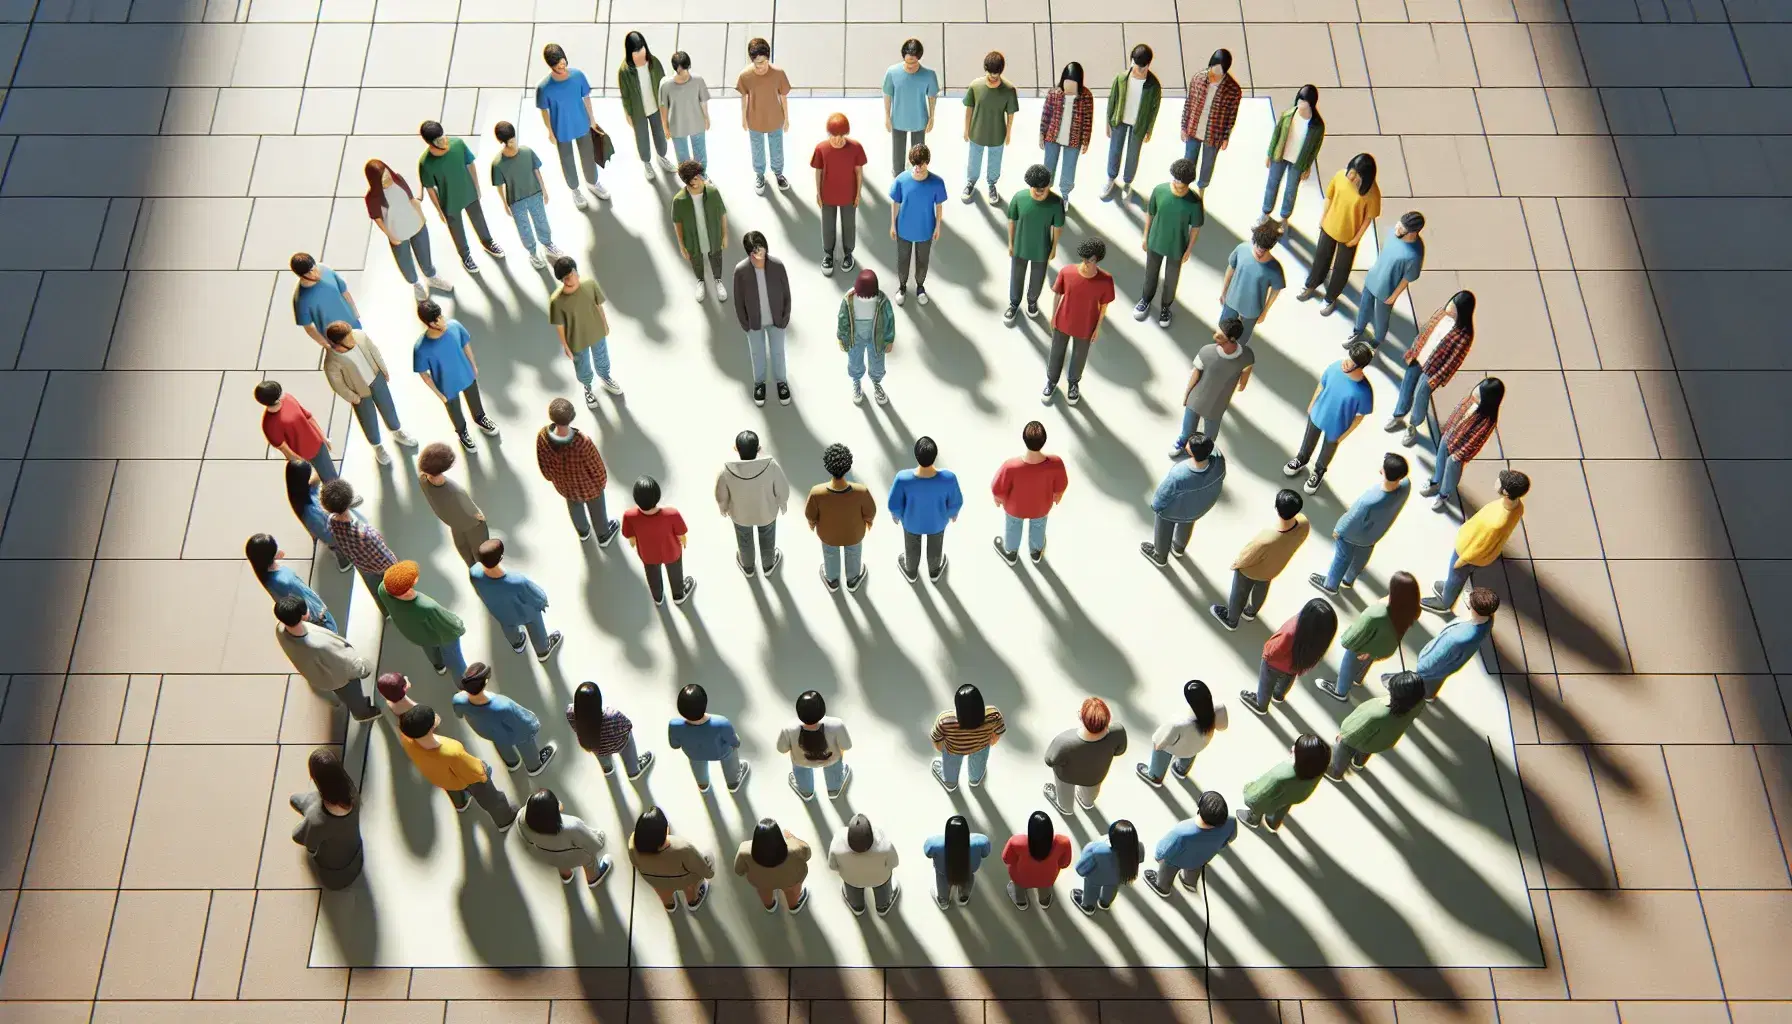 Grupo de personas formando un círculo en espacio abierto, visto desde arriba, con ropa colorida y manteniendo distancia entre sí.